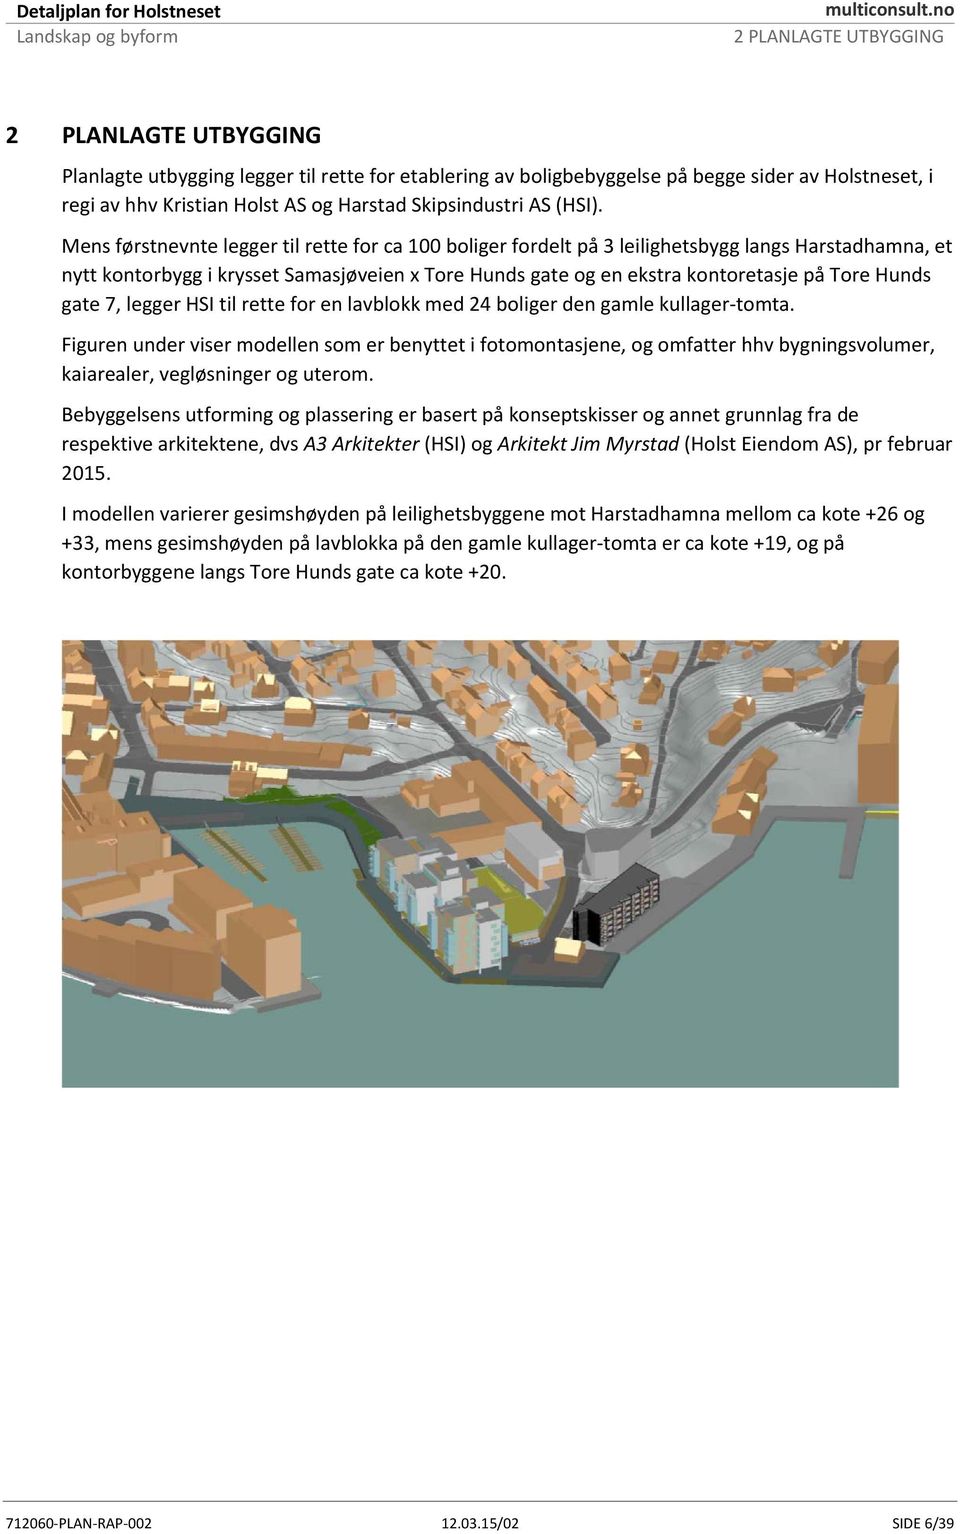 Mens førstnevnte legger til rette for ca 100 boliger fordelt på 3 leilighetsbygg langs Harstadhamna, et nytt kontorbygg i krysset Samasjøveien x Tore Hunds gate og en ekstra kontoretasje på Tore